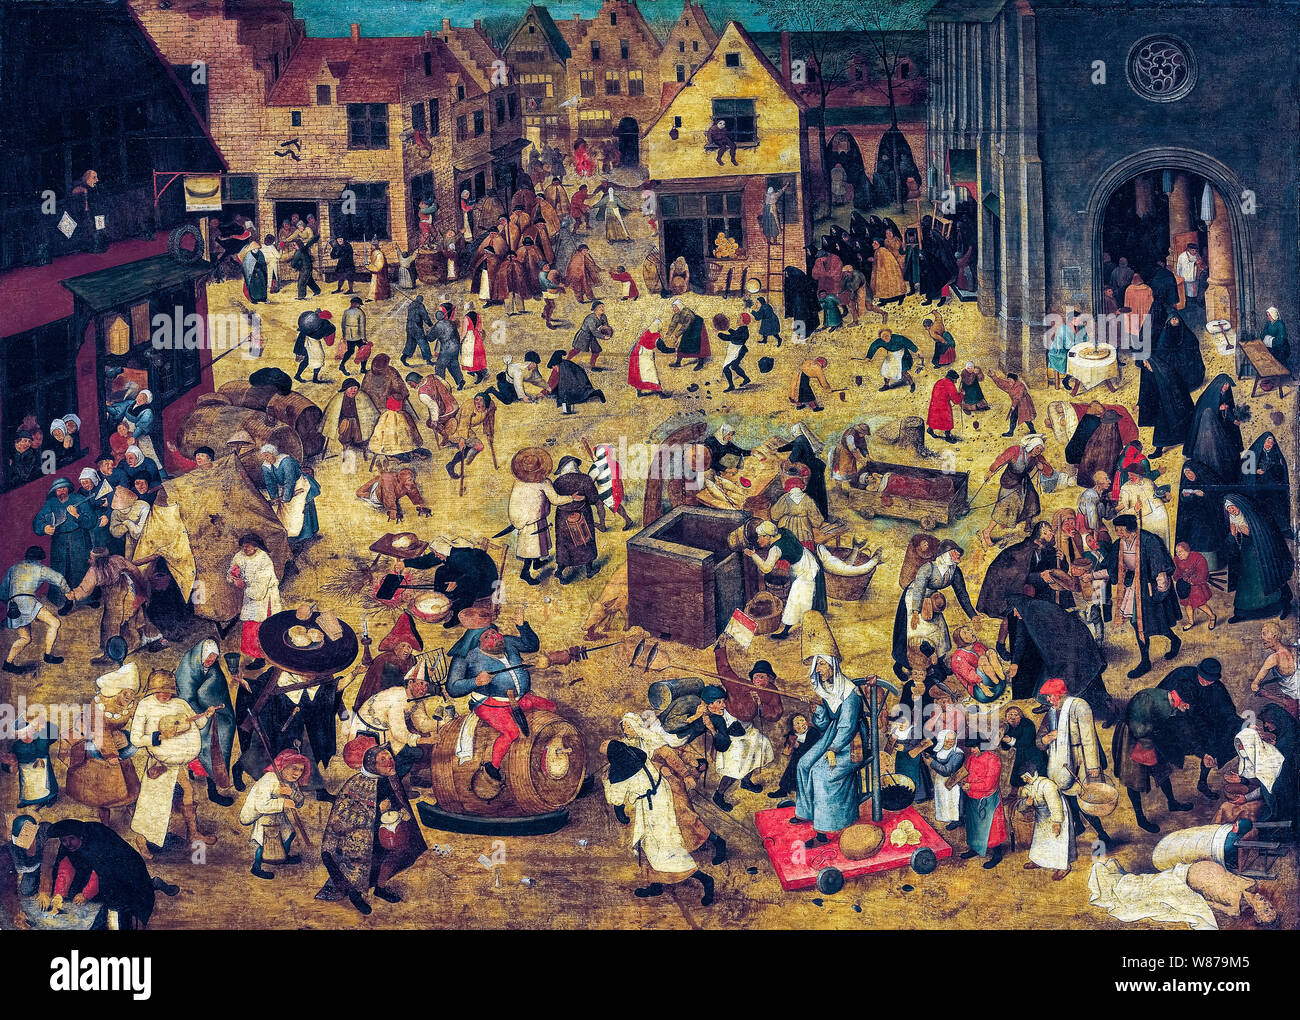 Pieter Brueghel le Jeune, le combat de Carnaval et Carême, peinture, 1600-1638 Banque D'Images